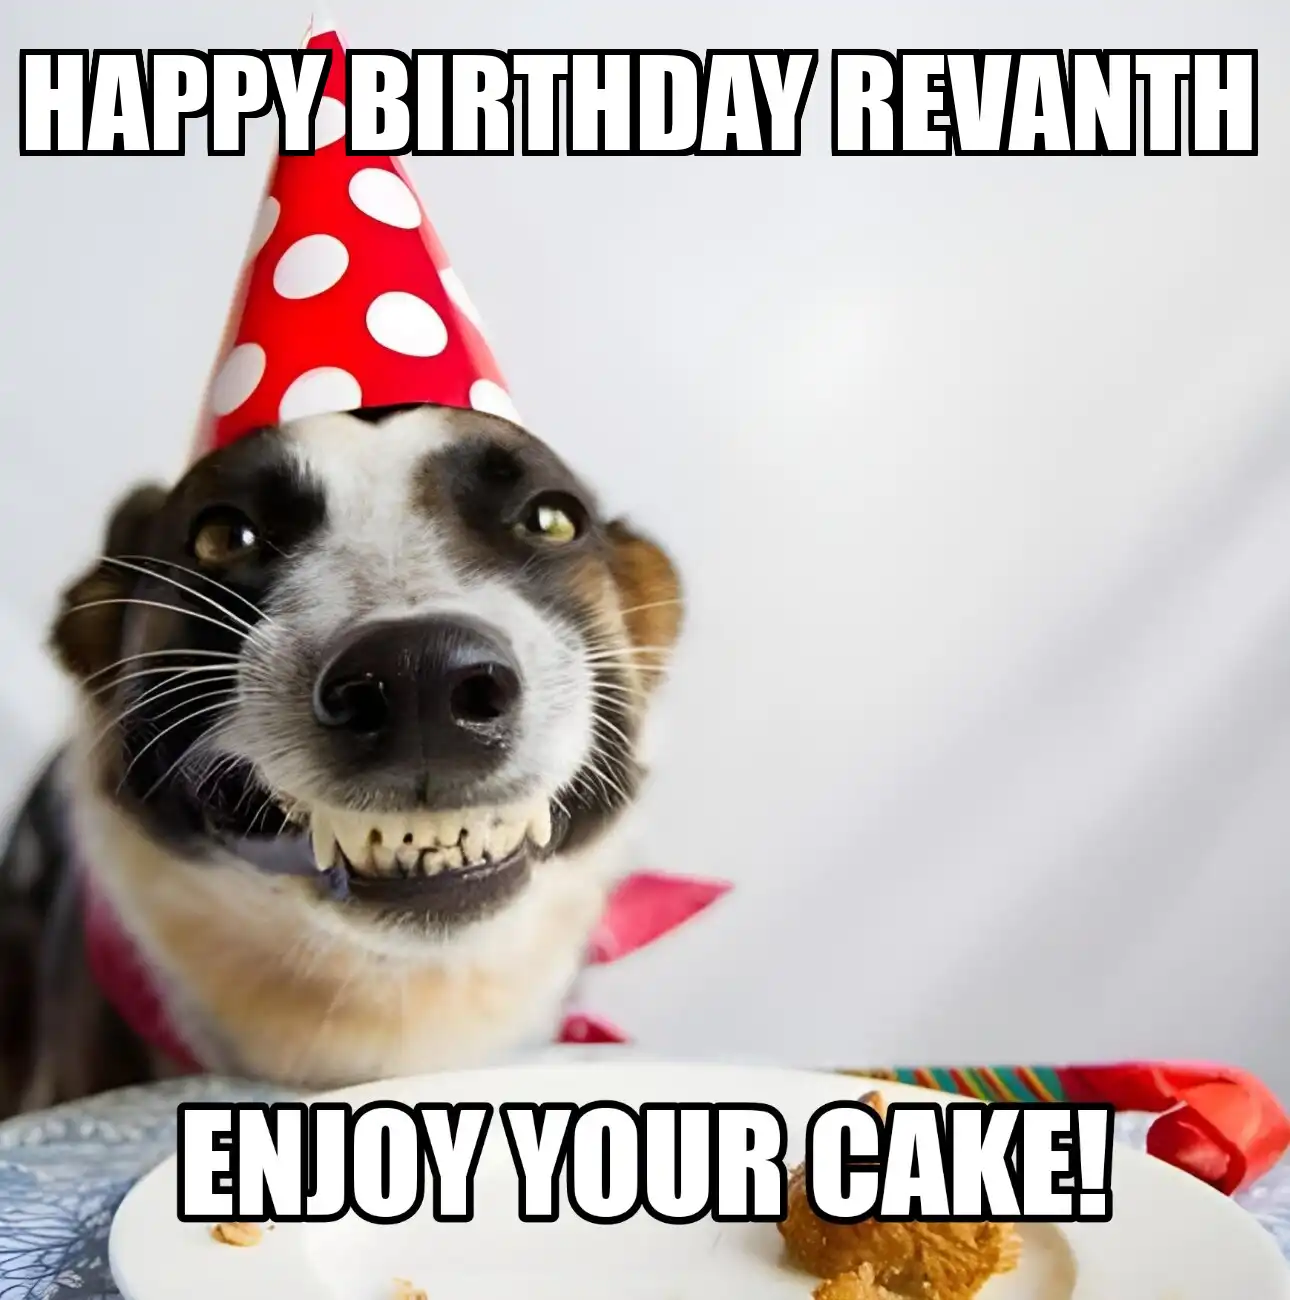 Happy Birthday Revanth Enjoy Your Cake Dog Meme